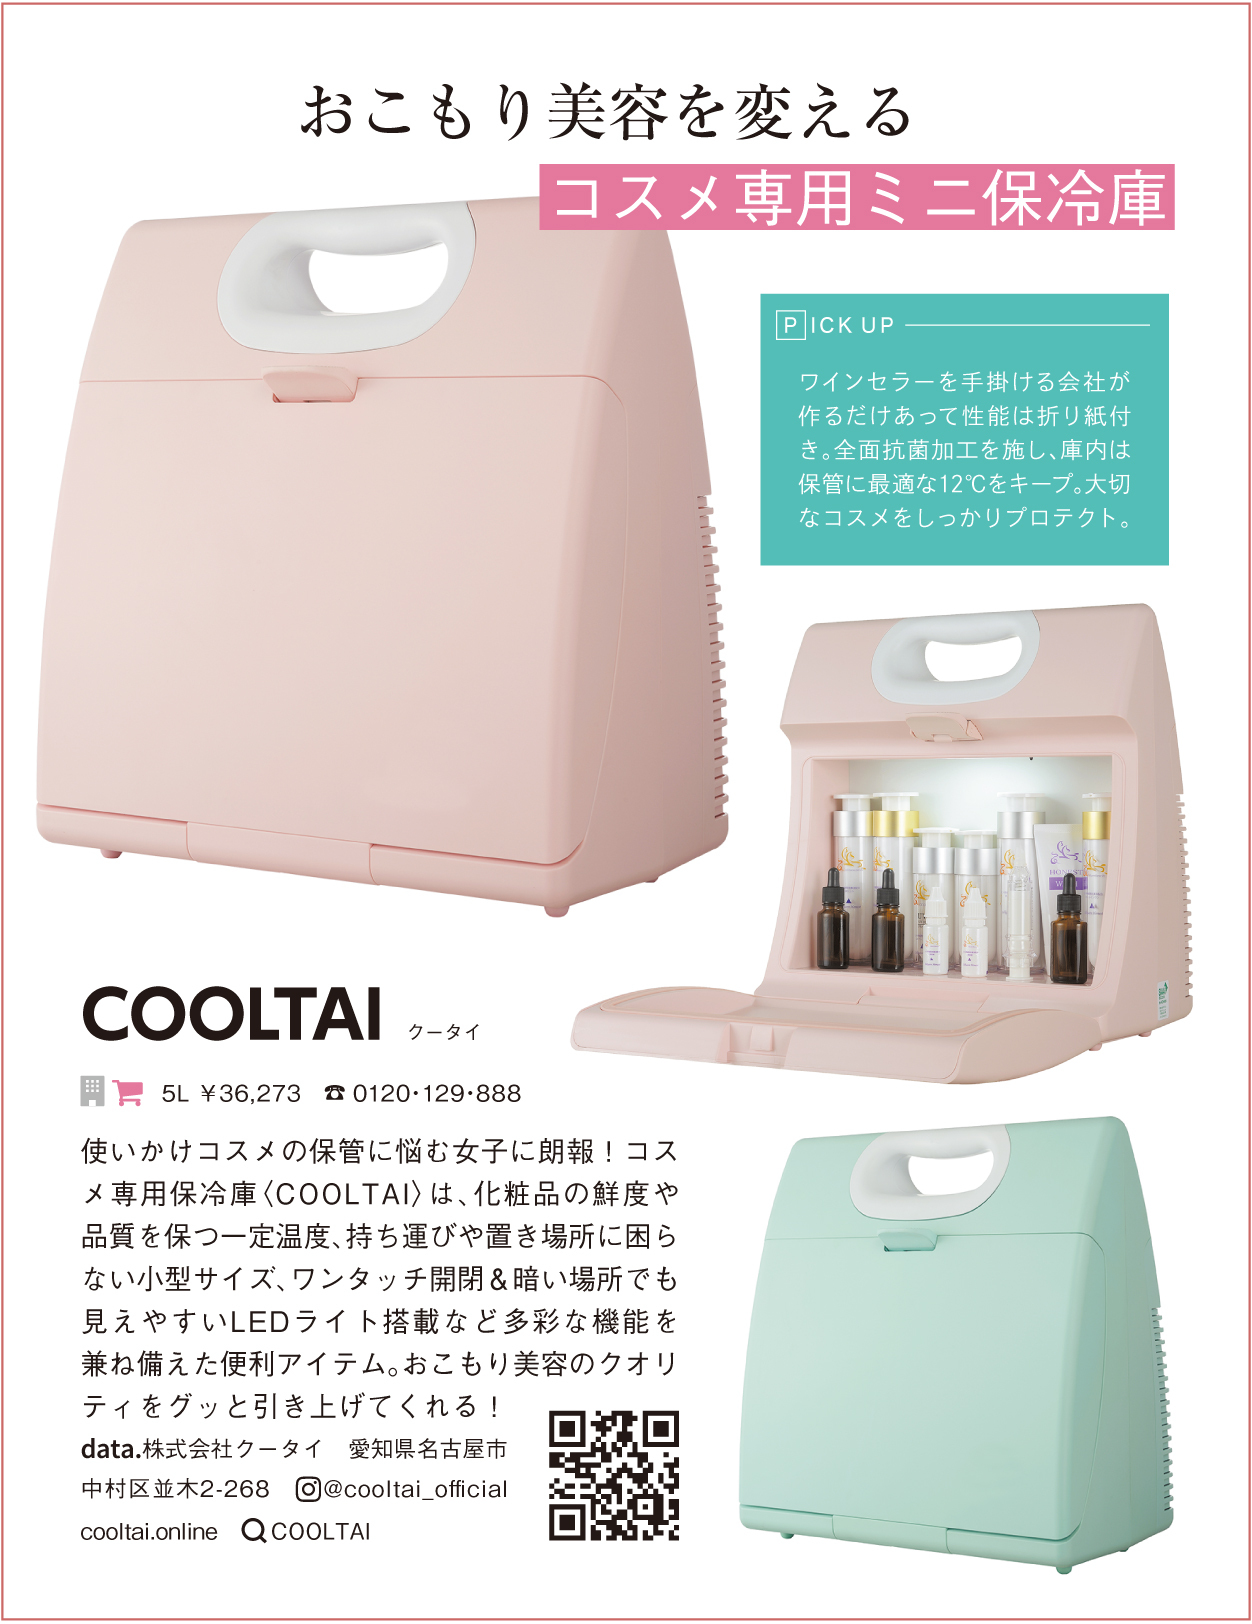 コスメ専用冷蔵庫COOLTAIがVOCE9月号に掲載されました。 | コスメ専用 